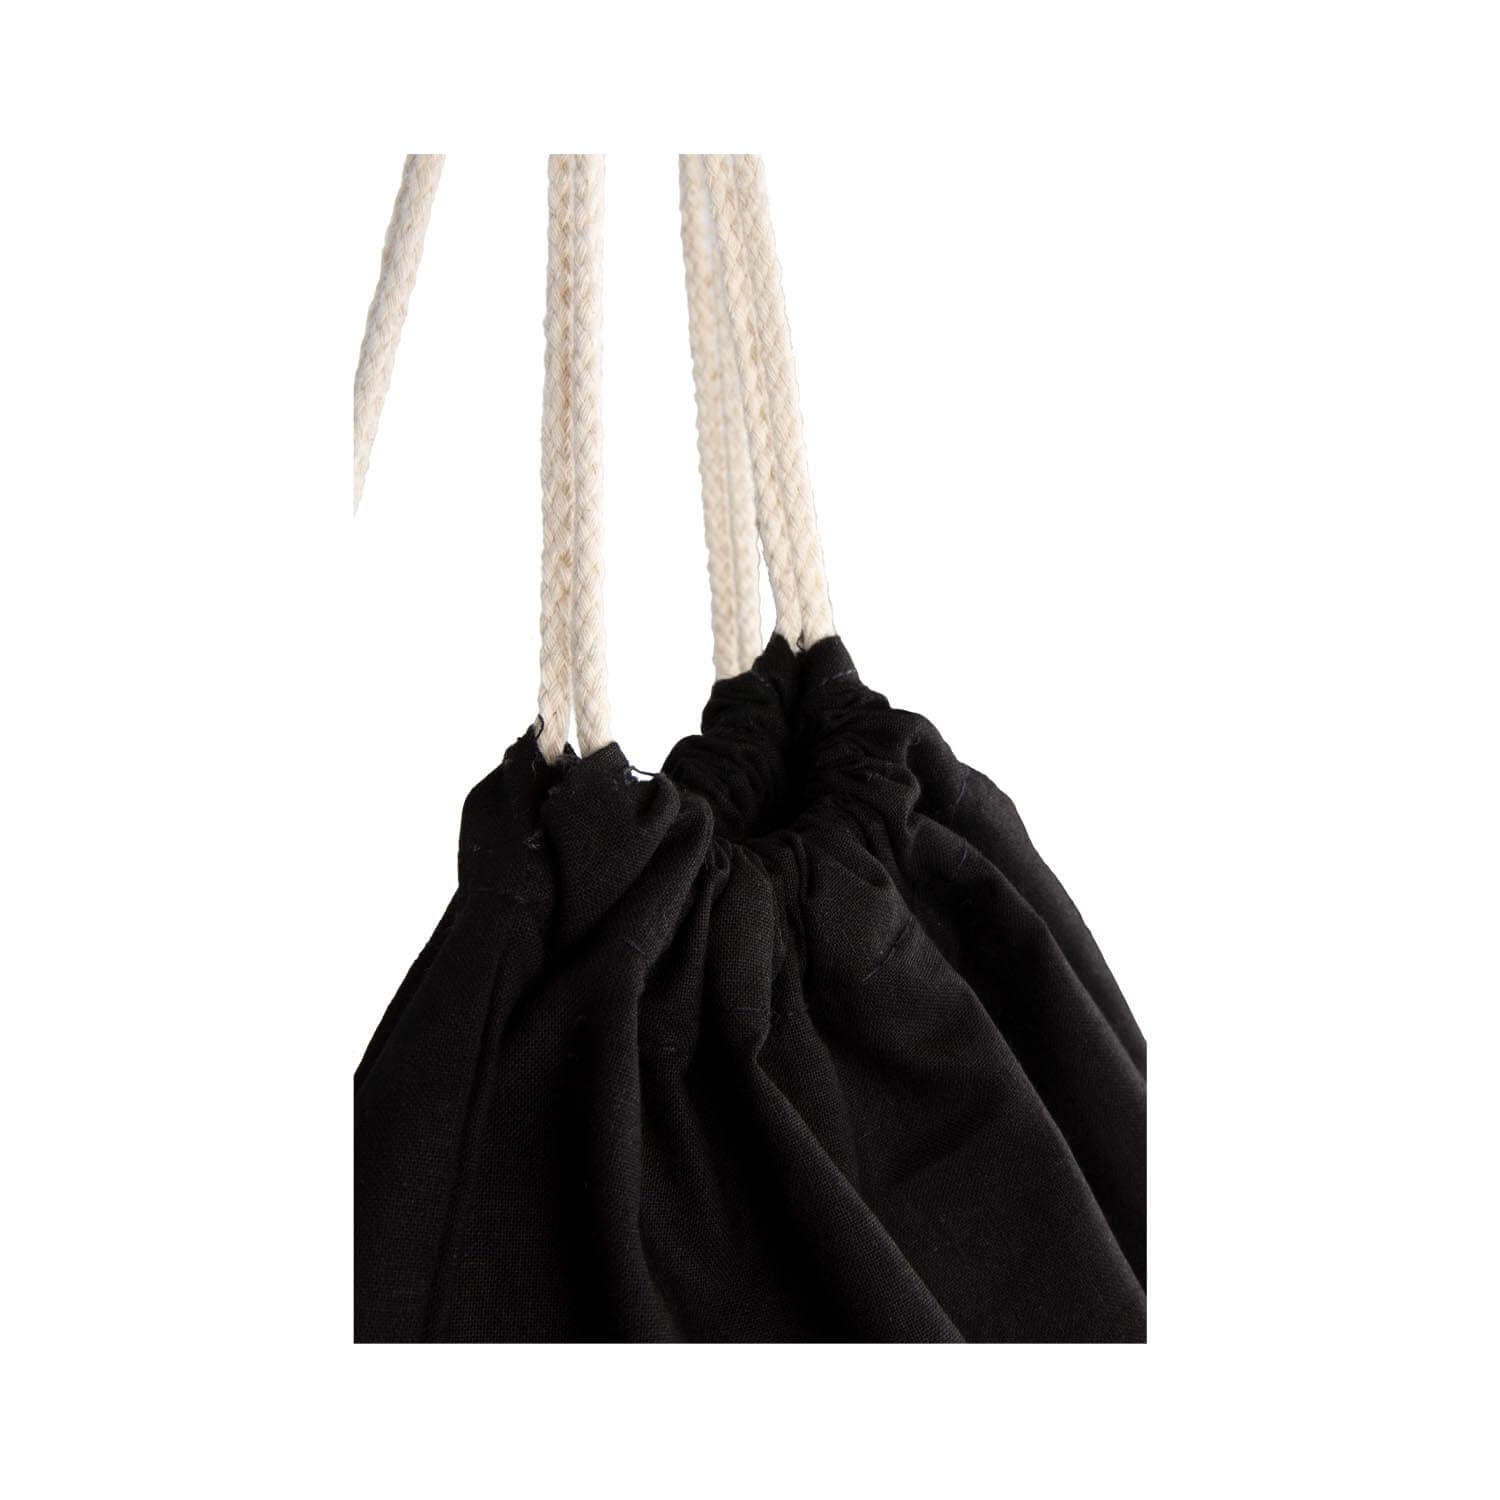 Sportbeutel individuell bedruckbar aus Baumwolle mit Kordeln, quer/längs Motiv, schwarz/natur